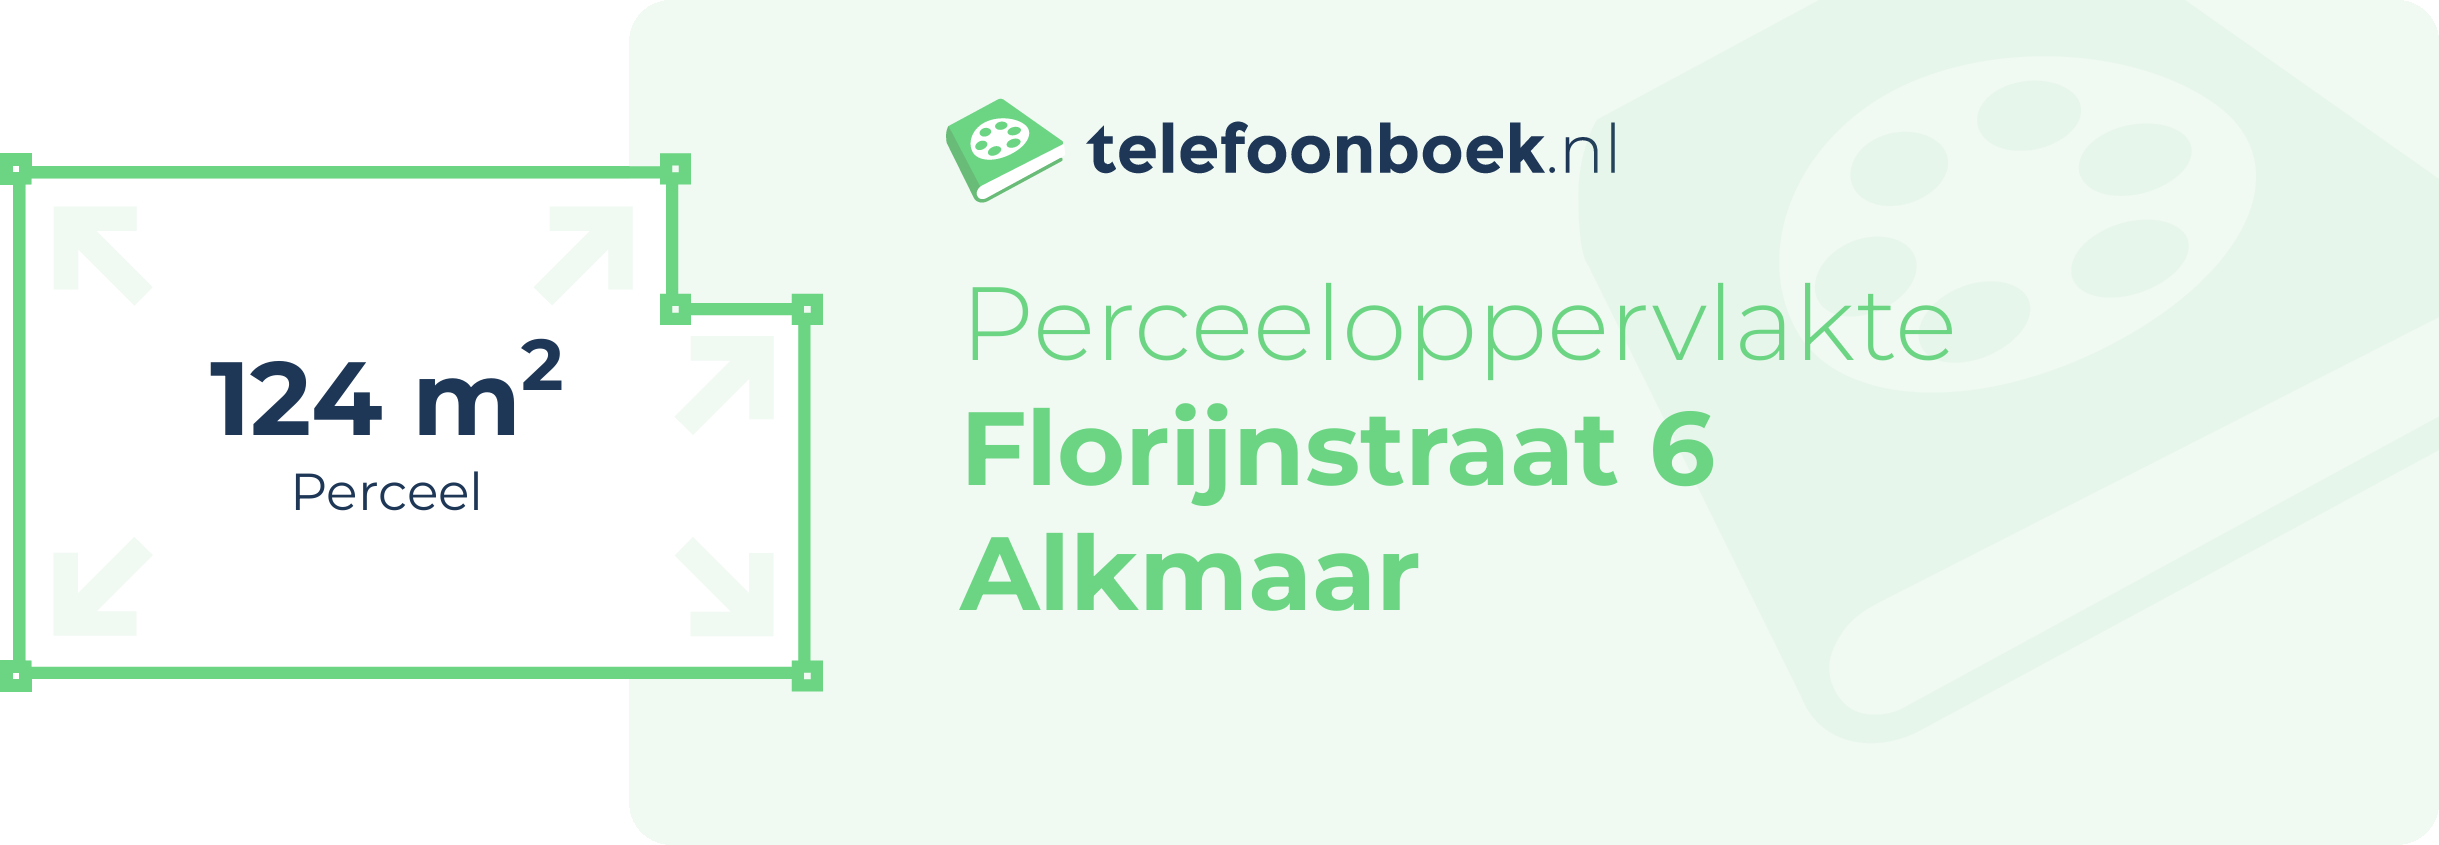 Perceeloppervlakte Florijnstraat 6 Alkmaar